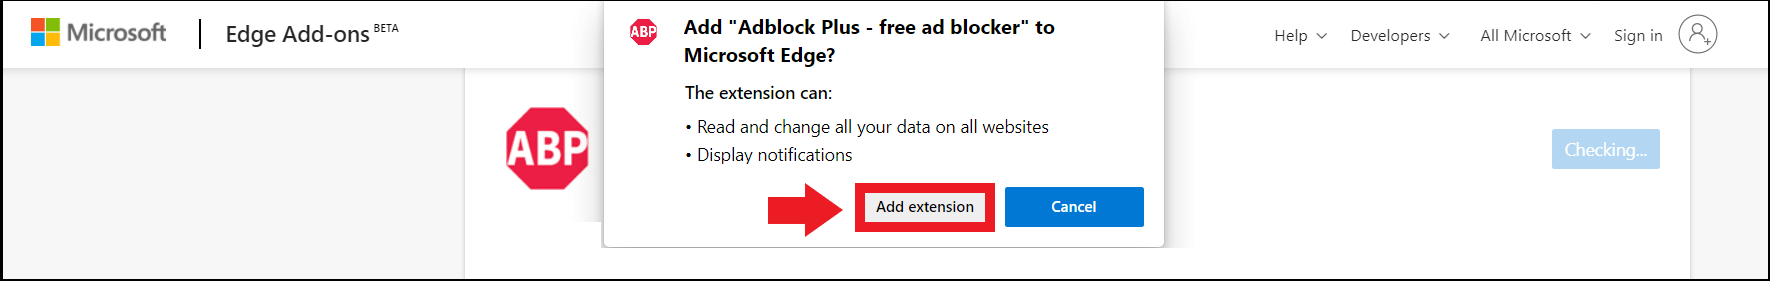 Installazione di Adblock Plus tramite la pagina dei componenti aggiuntivi per Edge